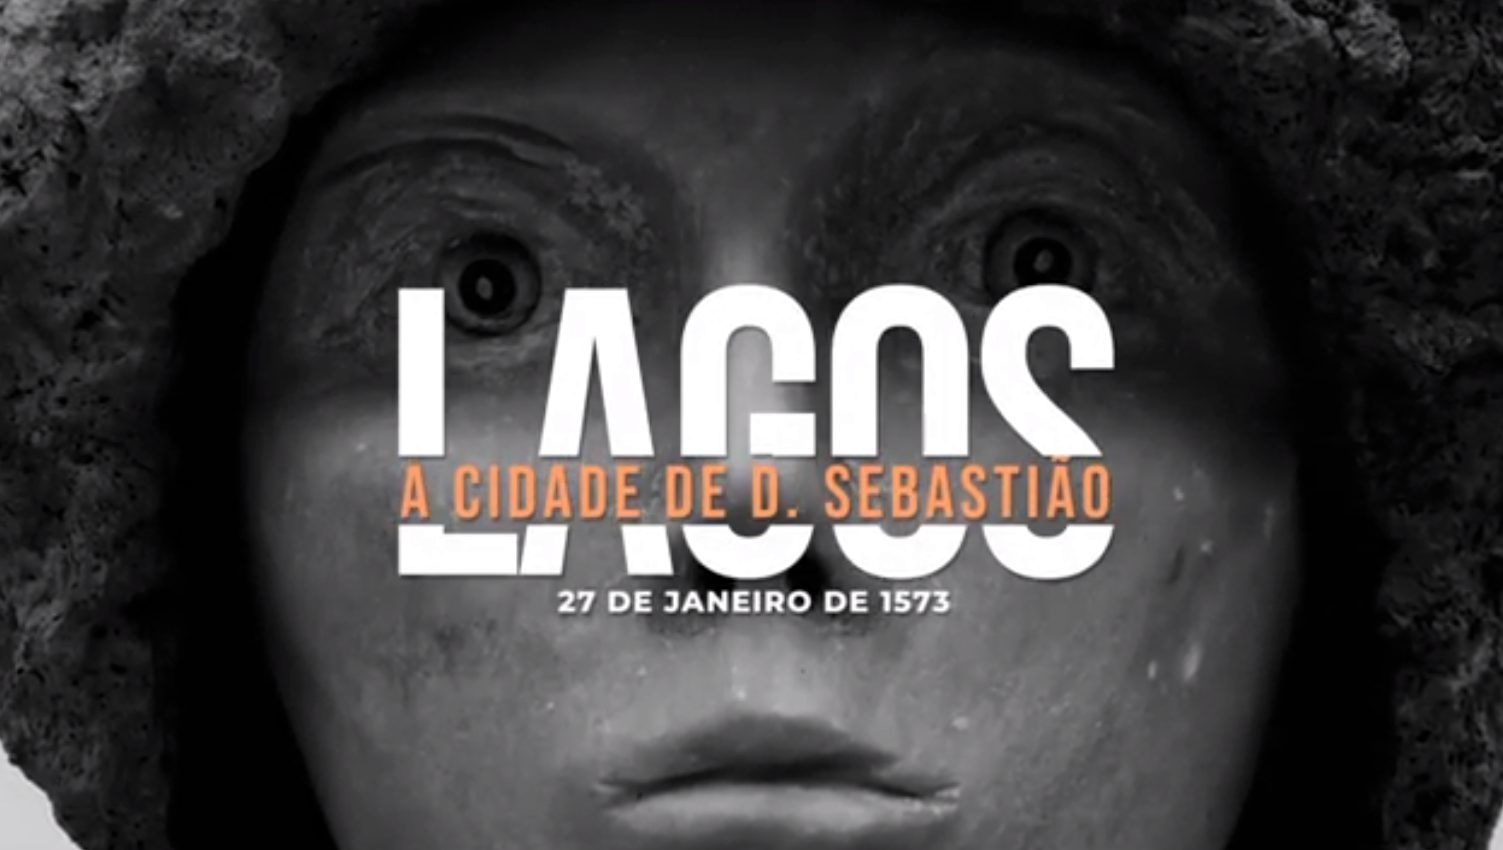 Elevação de Lagos a cidade – 448º aniversário: Município de Lagos apresenta documentário em homenagem a El-Rei D. Sebastião